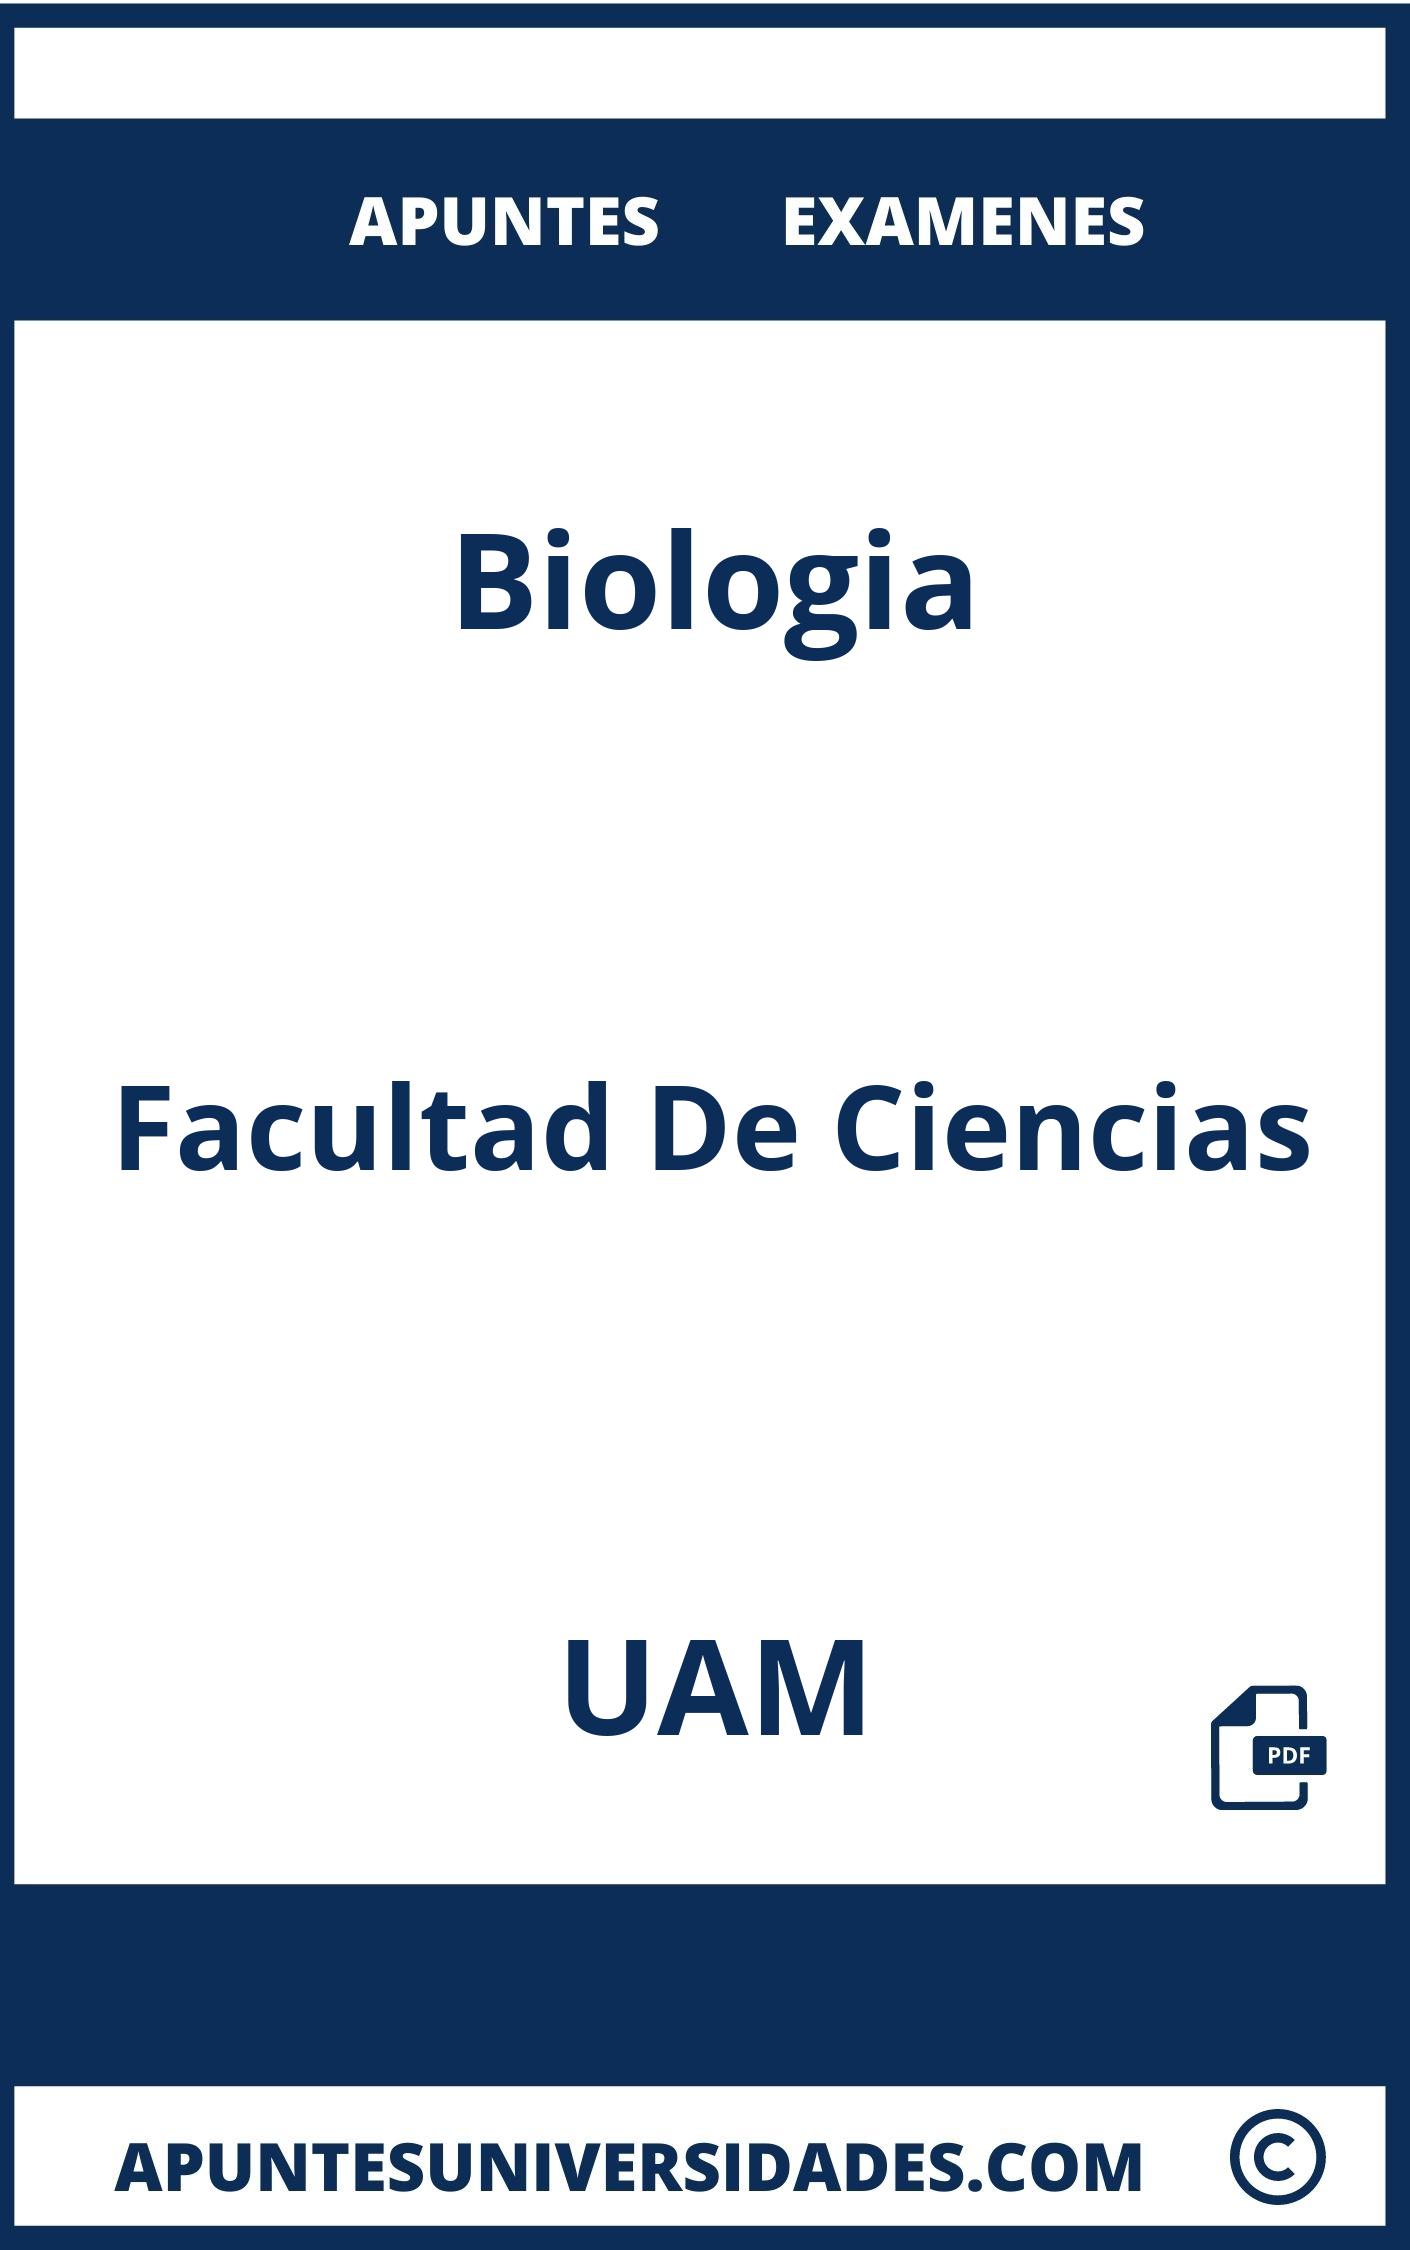 Apuntes y Examenes de Biologia UAM